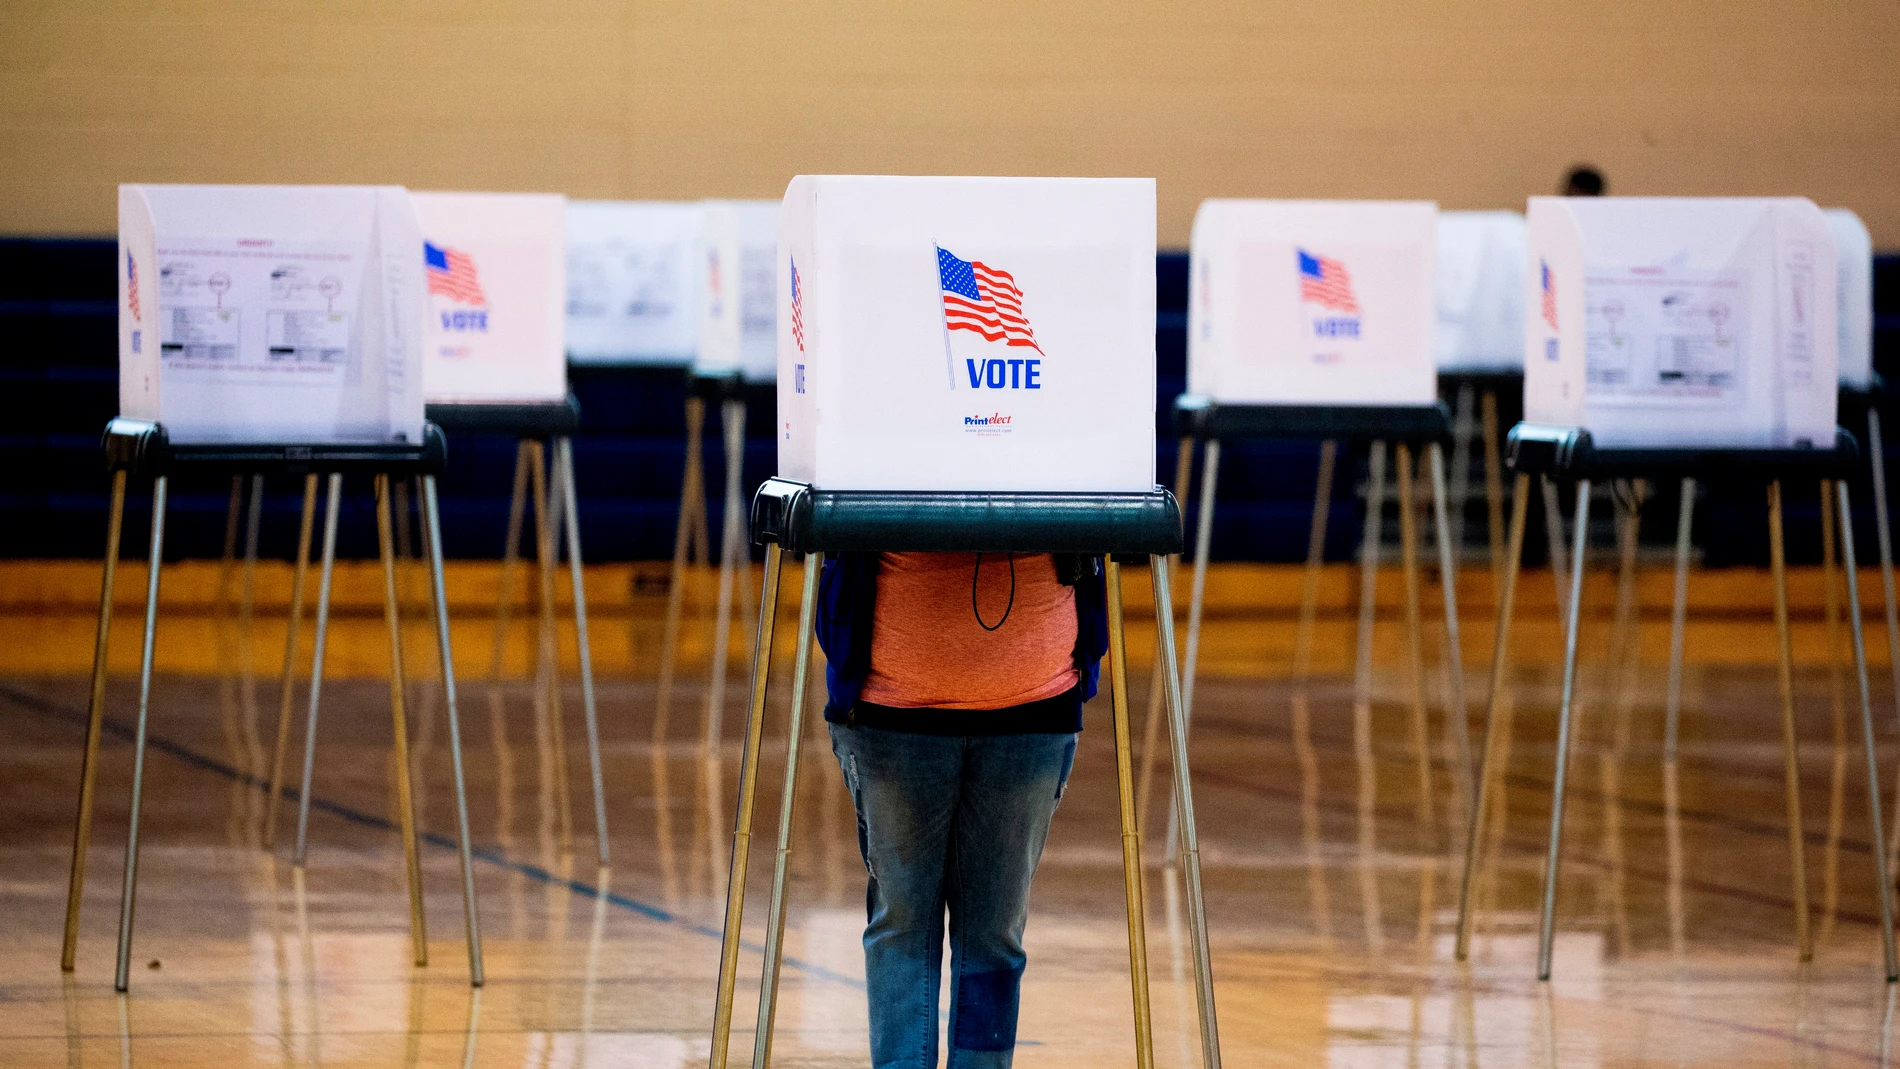 Una persona ejerce su derecho al voto en un colegio electoral de Bowie, Maryland